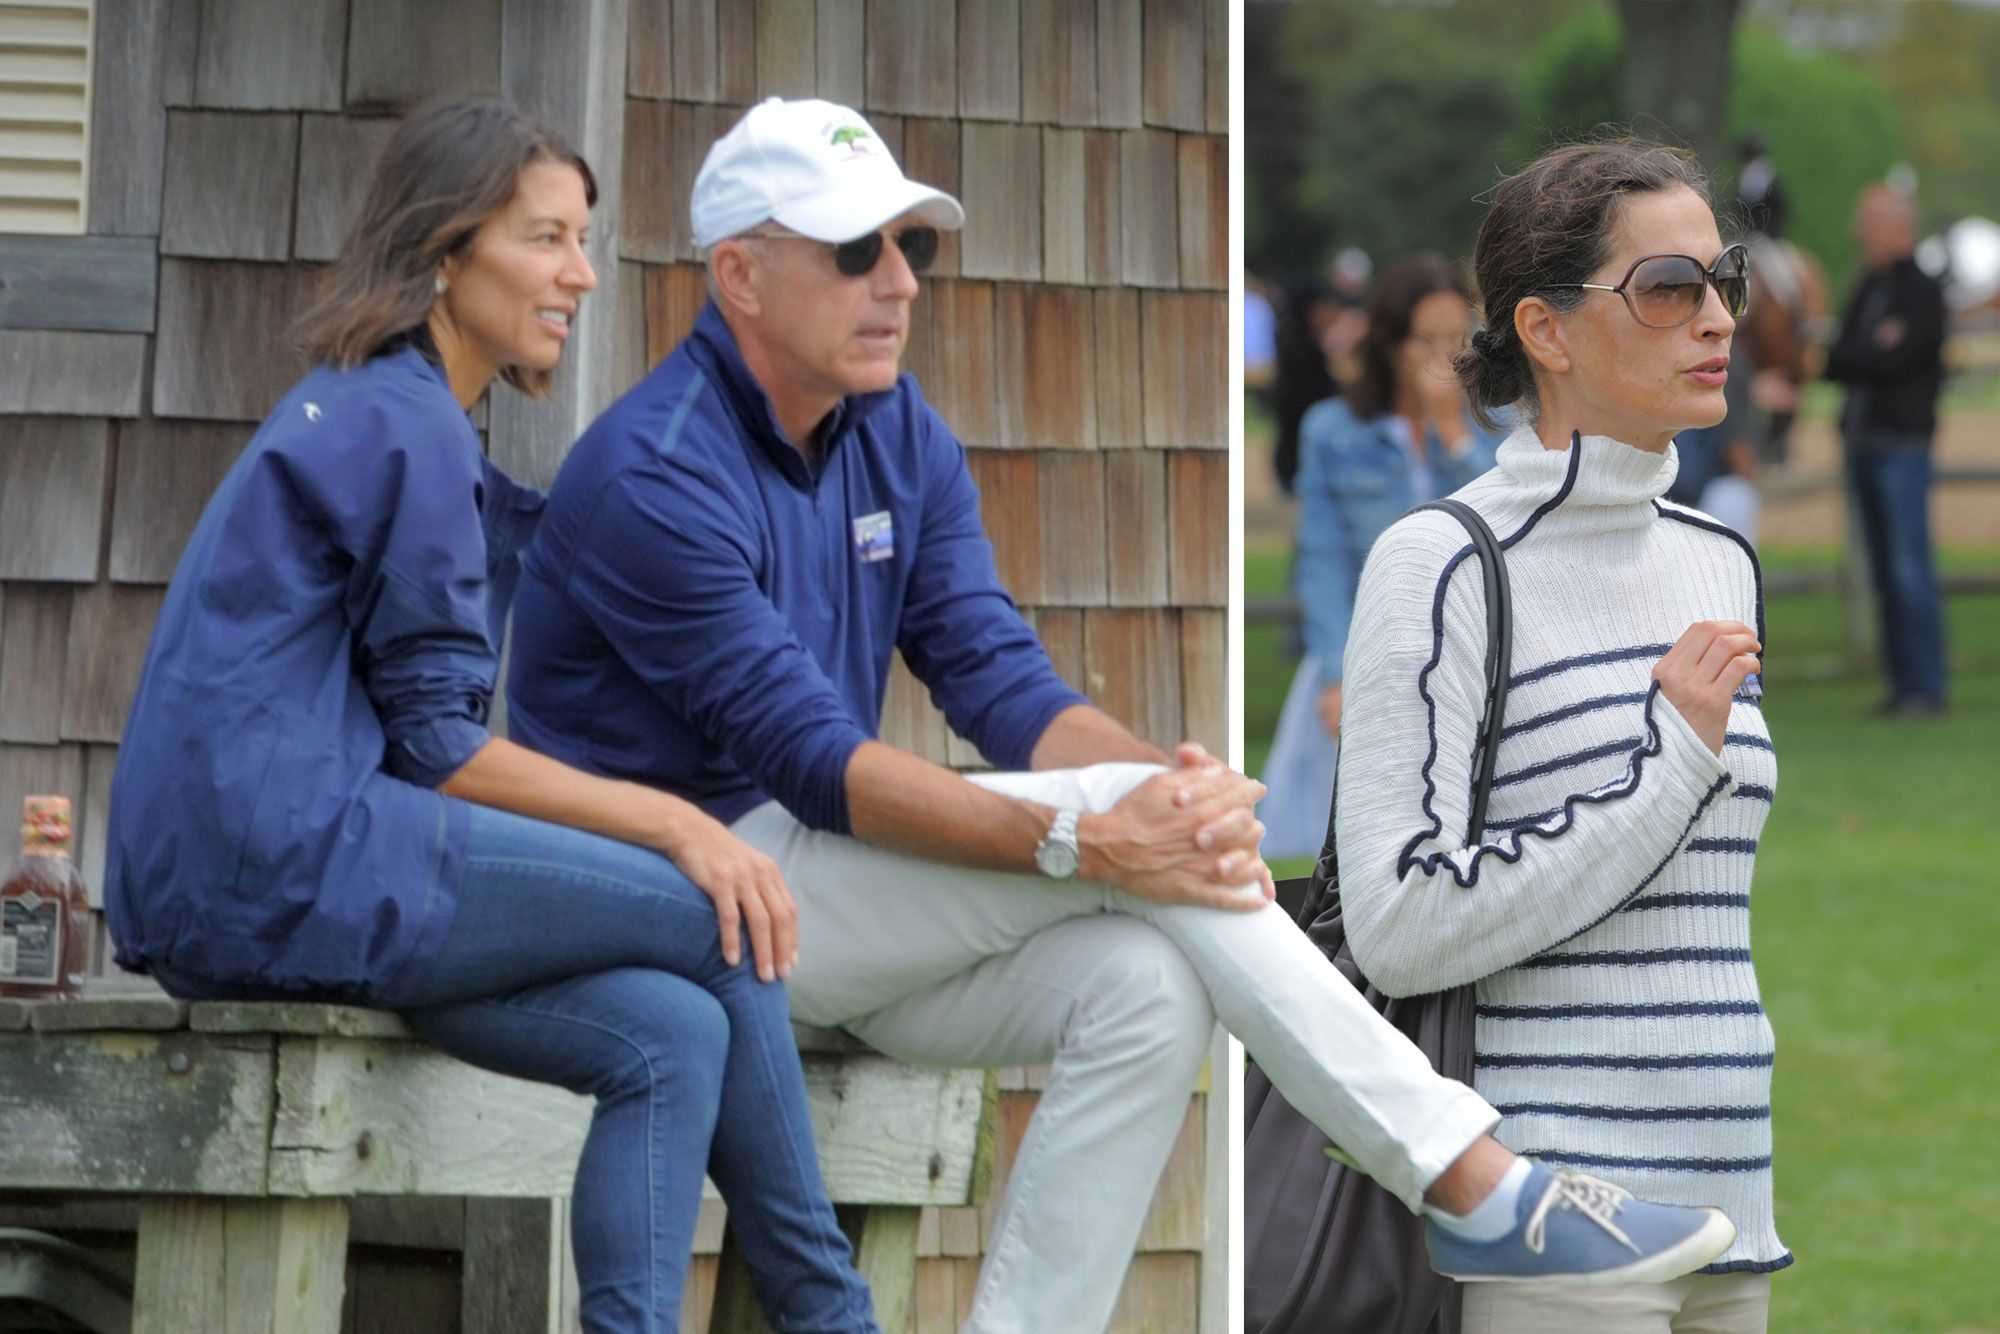 Matt Lauer, girlfriend attend same Hamptons event as ex-wife Annette Roque